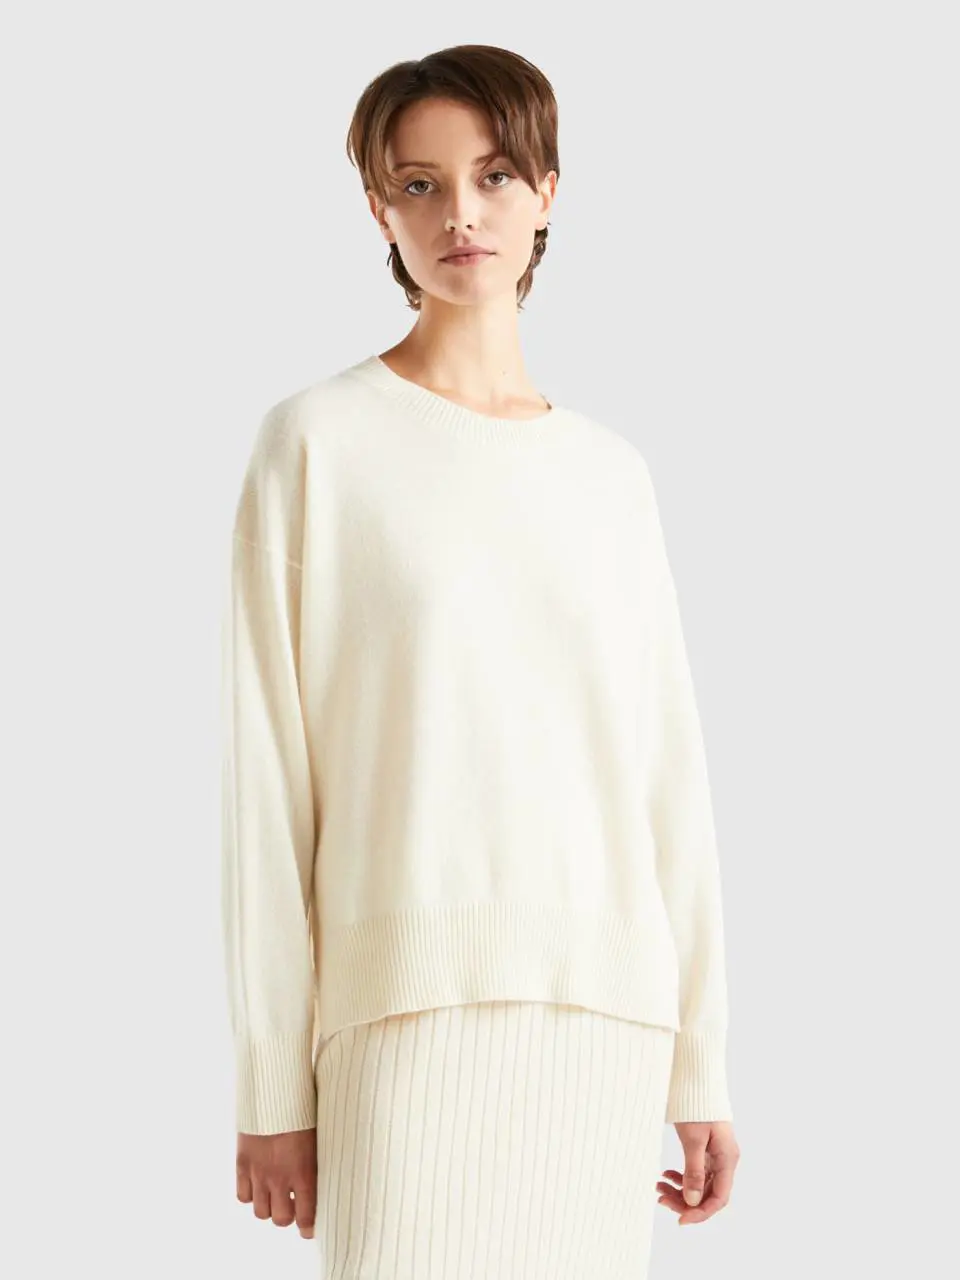 Benetton cream white sweater in 100% cashmere. 1